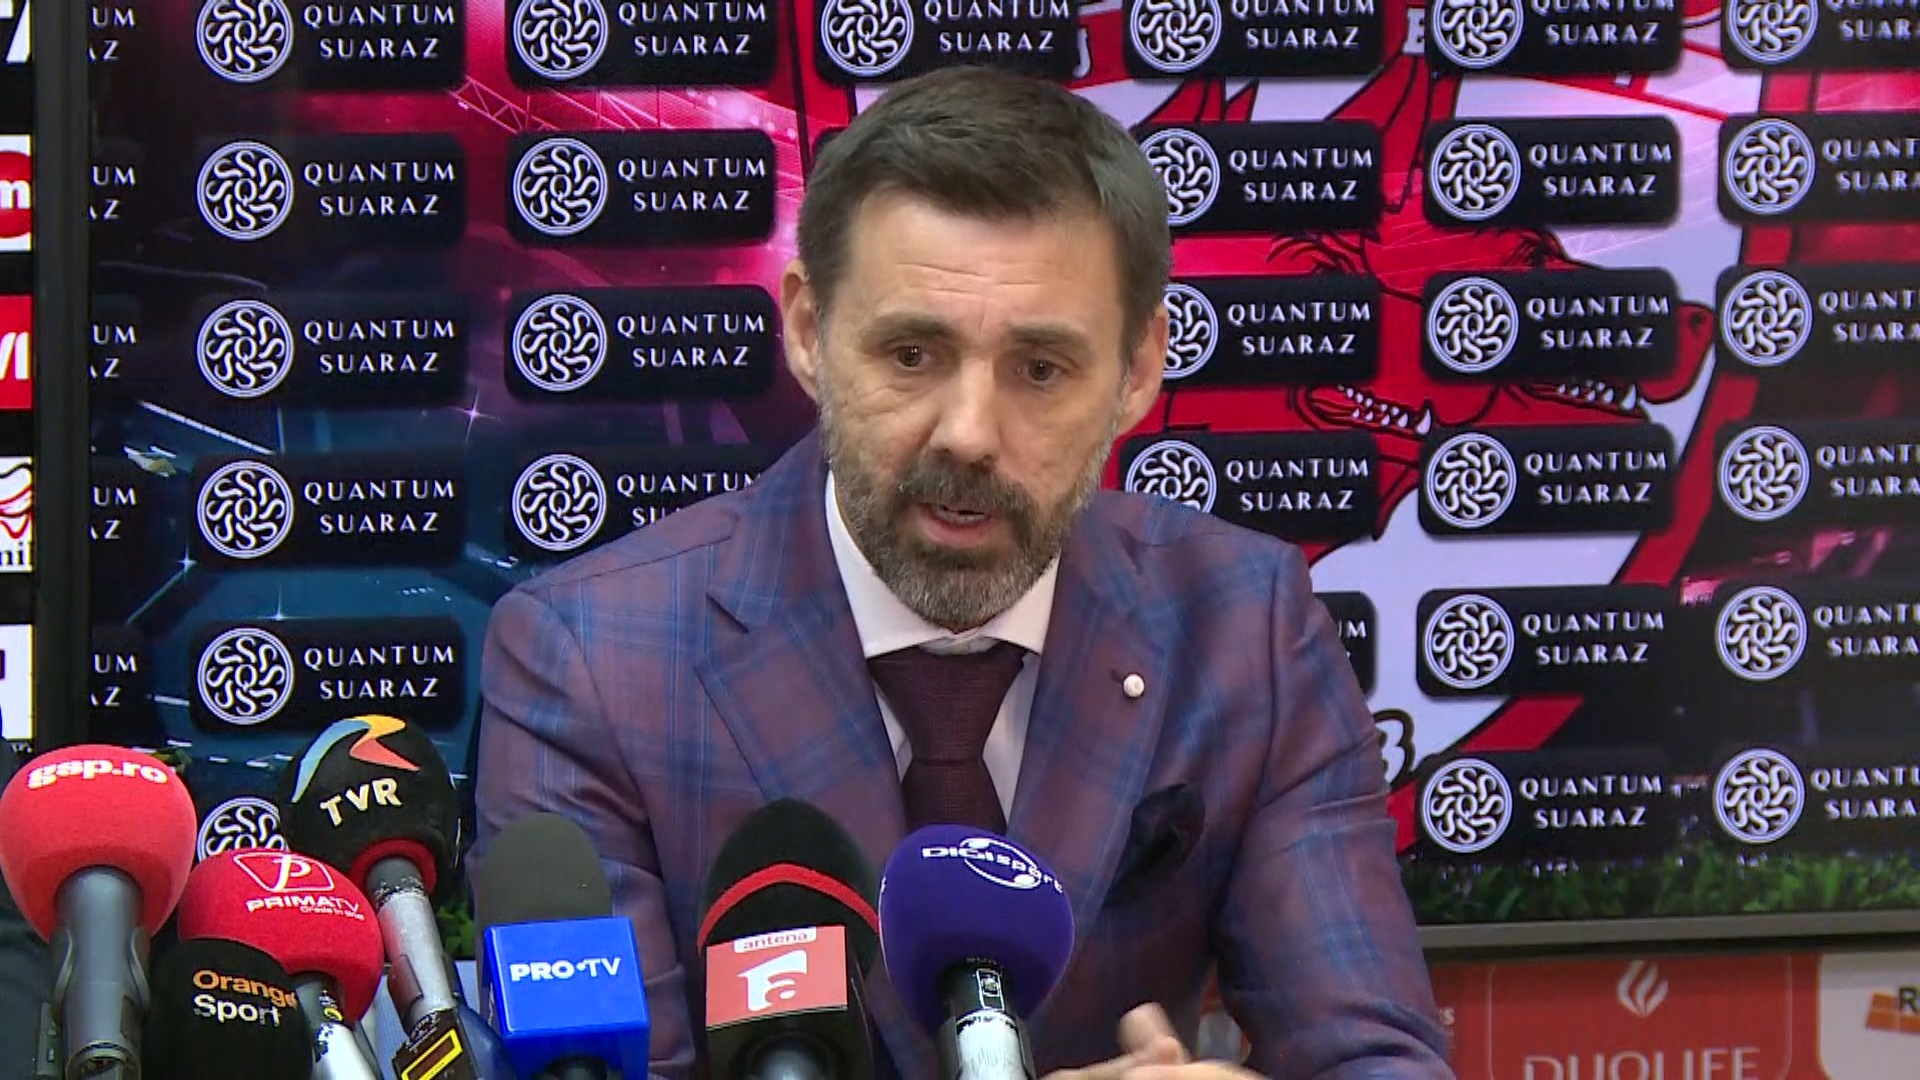 Zeljko Kopic nu a câștigat încă pe banca lui Dinamo, dar este încrezător: ”Trebuie să creștem”